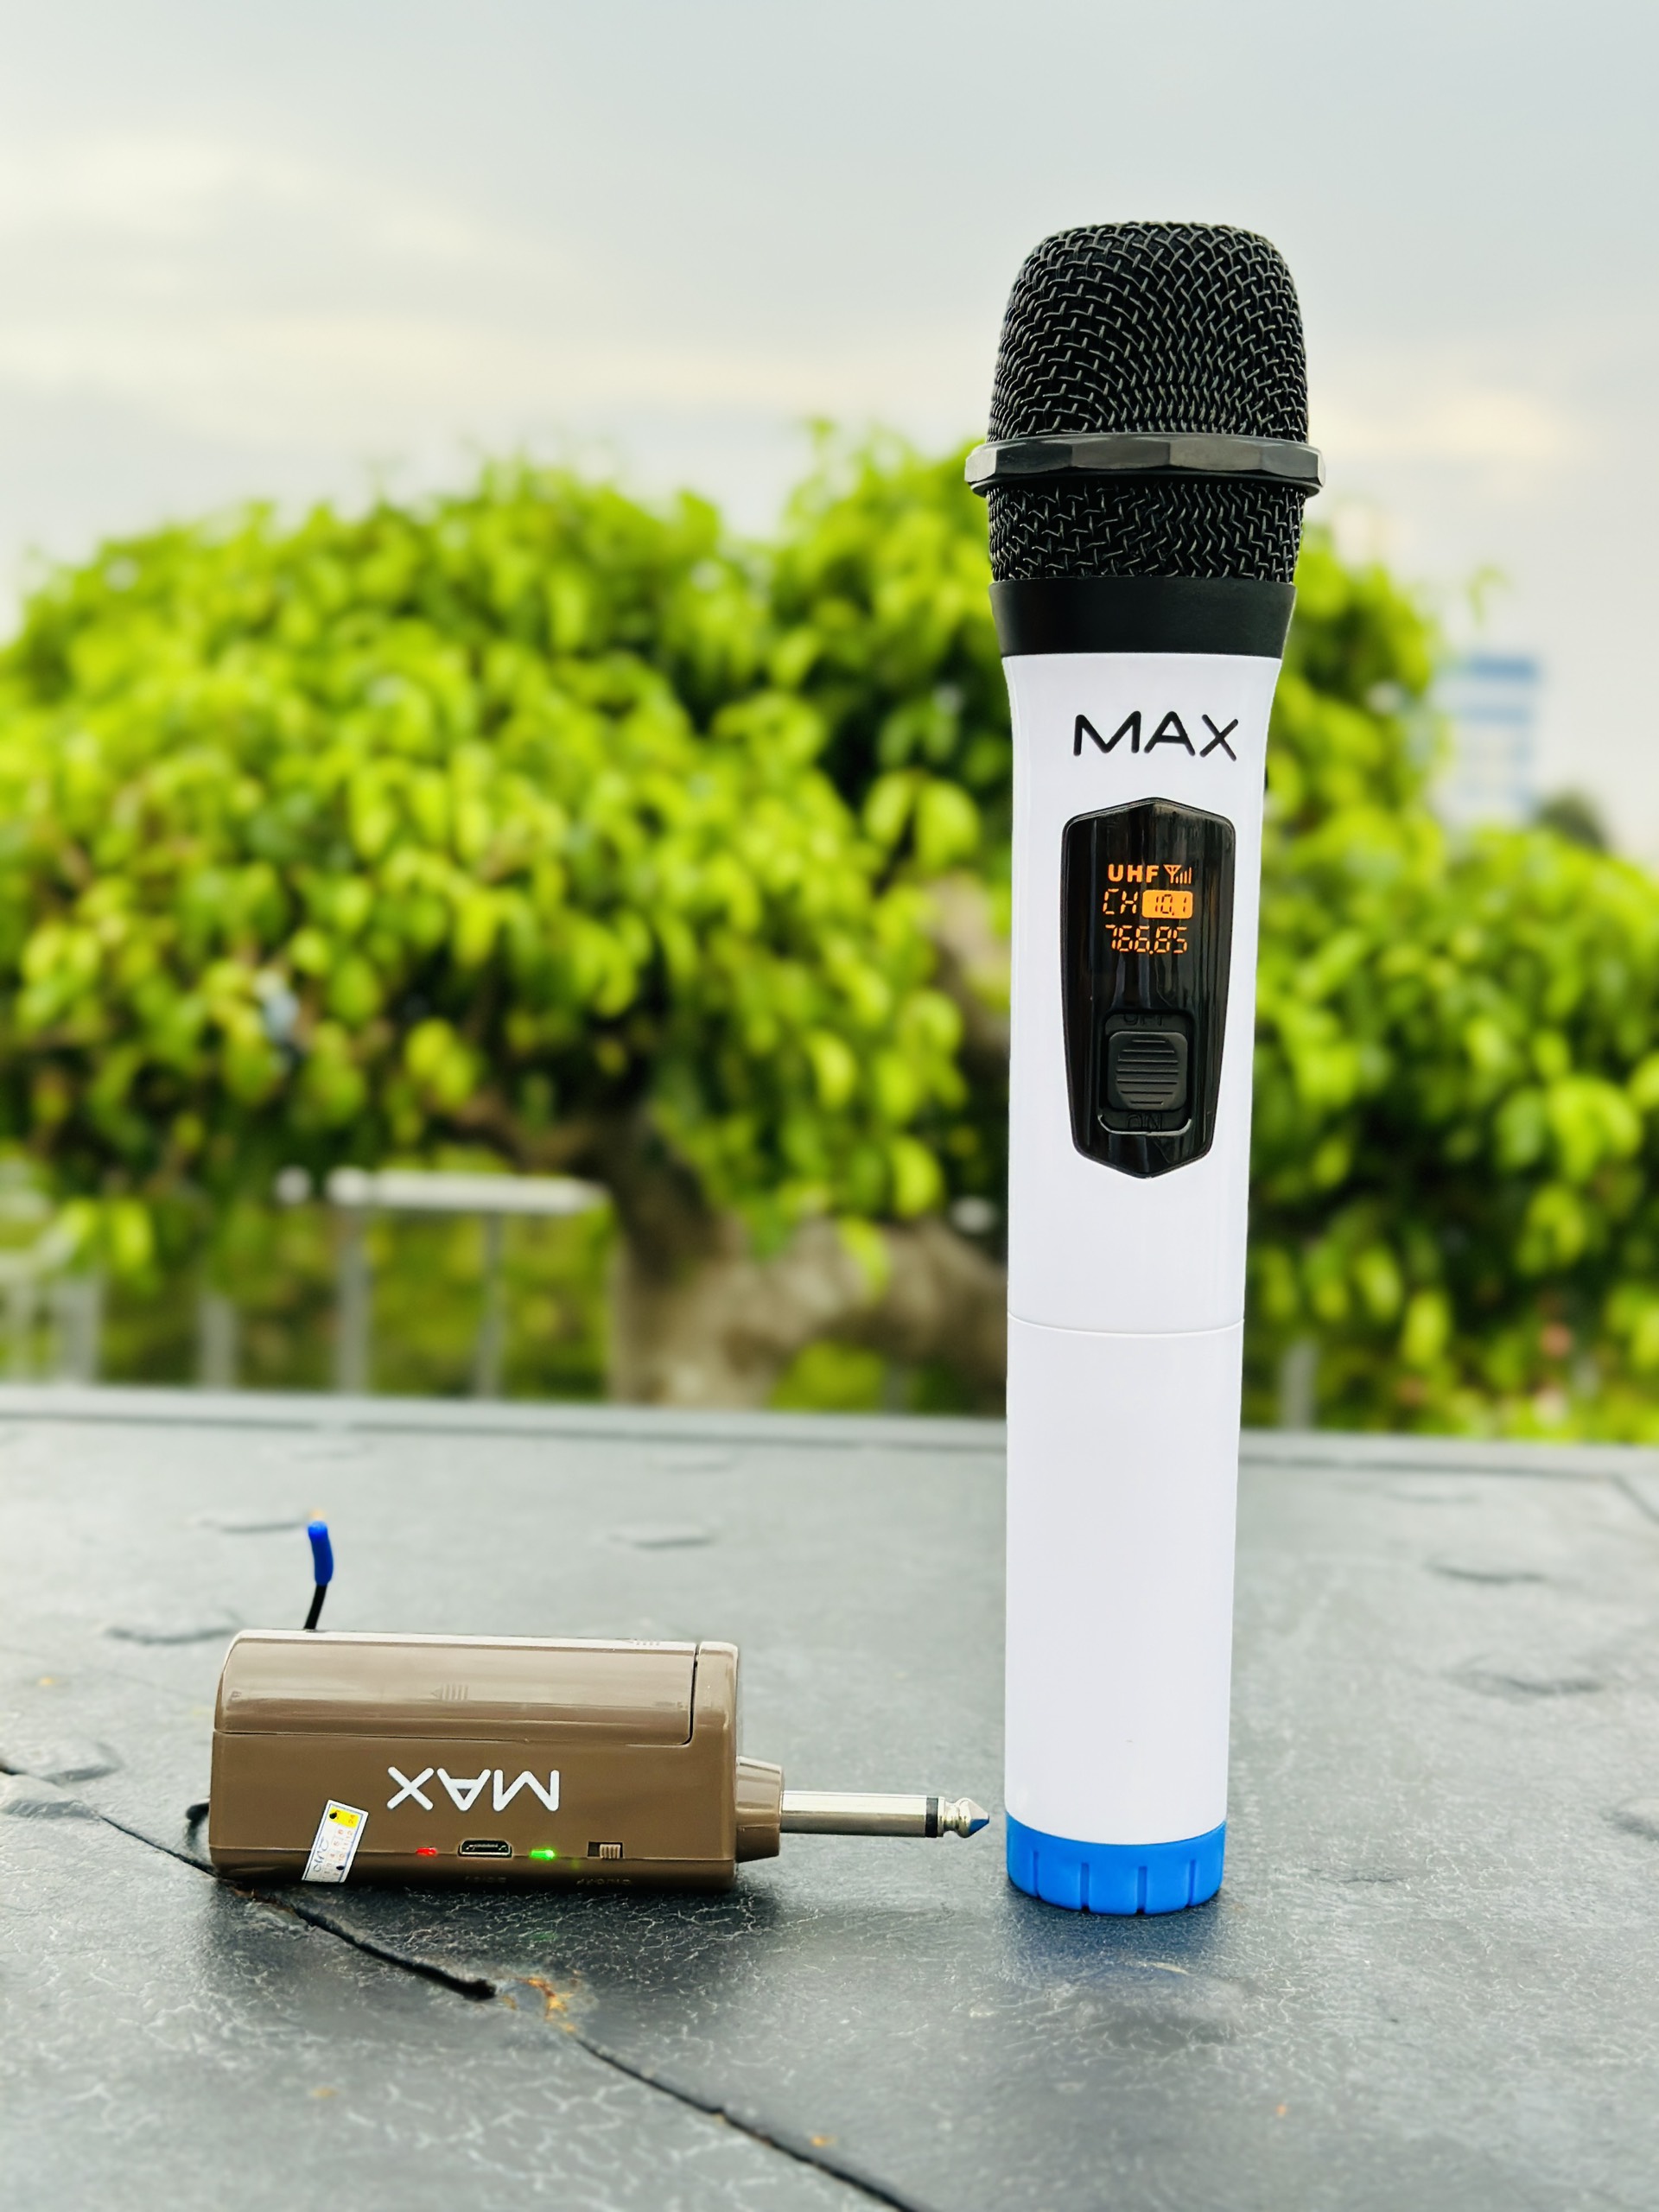 Micro không dây đa năng Max 21 - Micro không dây giá tốt, sử dụng cho mọi loại thiết bị âm thanh - Micro dành cho loa kéo, loa bluetooth, amply - Màn hình Led hiển thị thông số - Âm thanh cực hay, giá cực rẻ - Hàng nhập khẩu